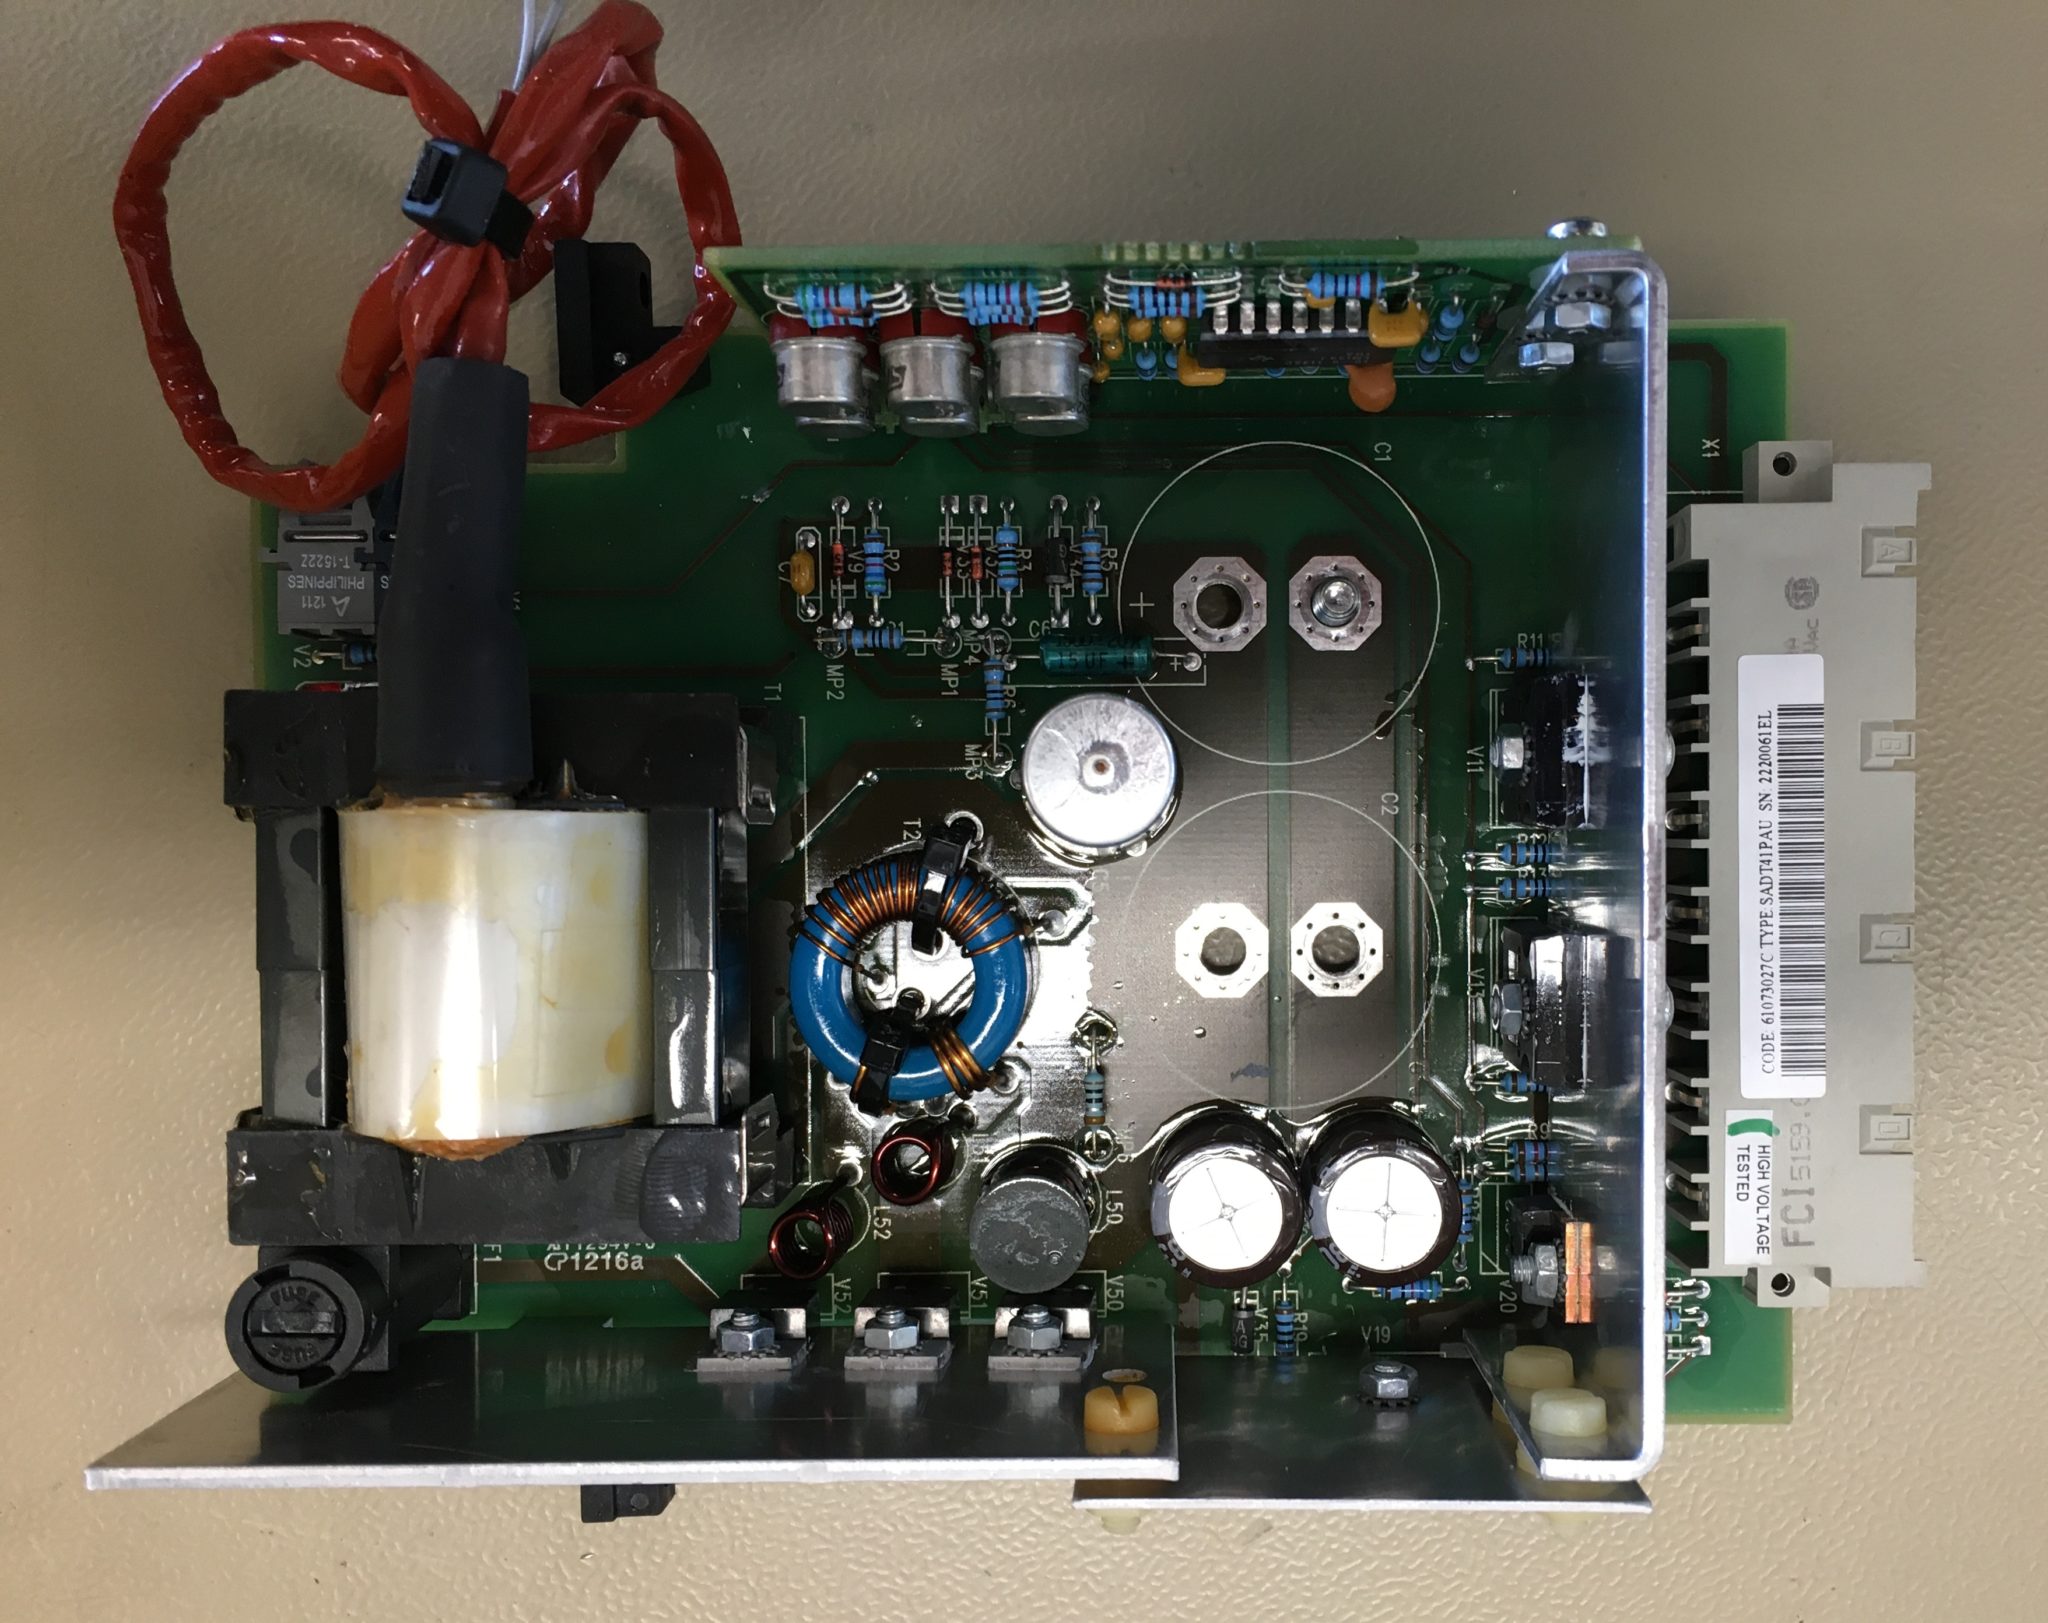 Pulse amplifier board